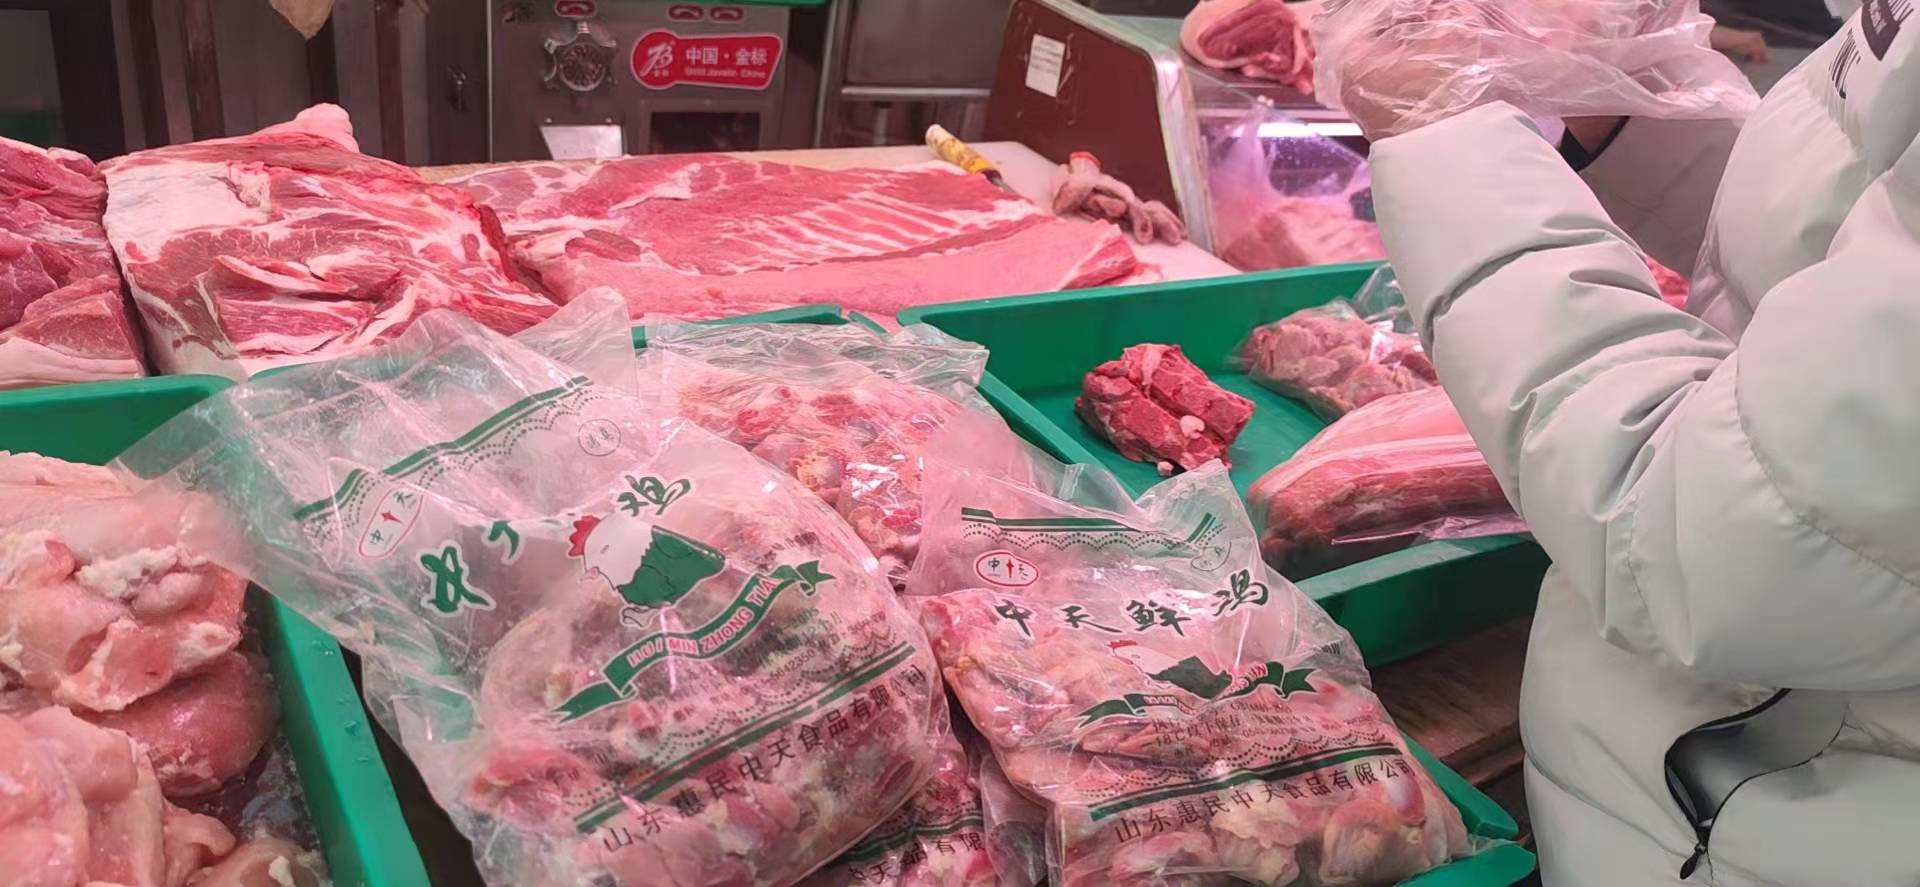 国庆节临近屠宰企业仍有节前备货需求 生猪价格震荡偏强运行